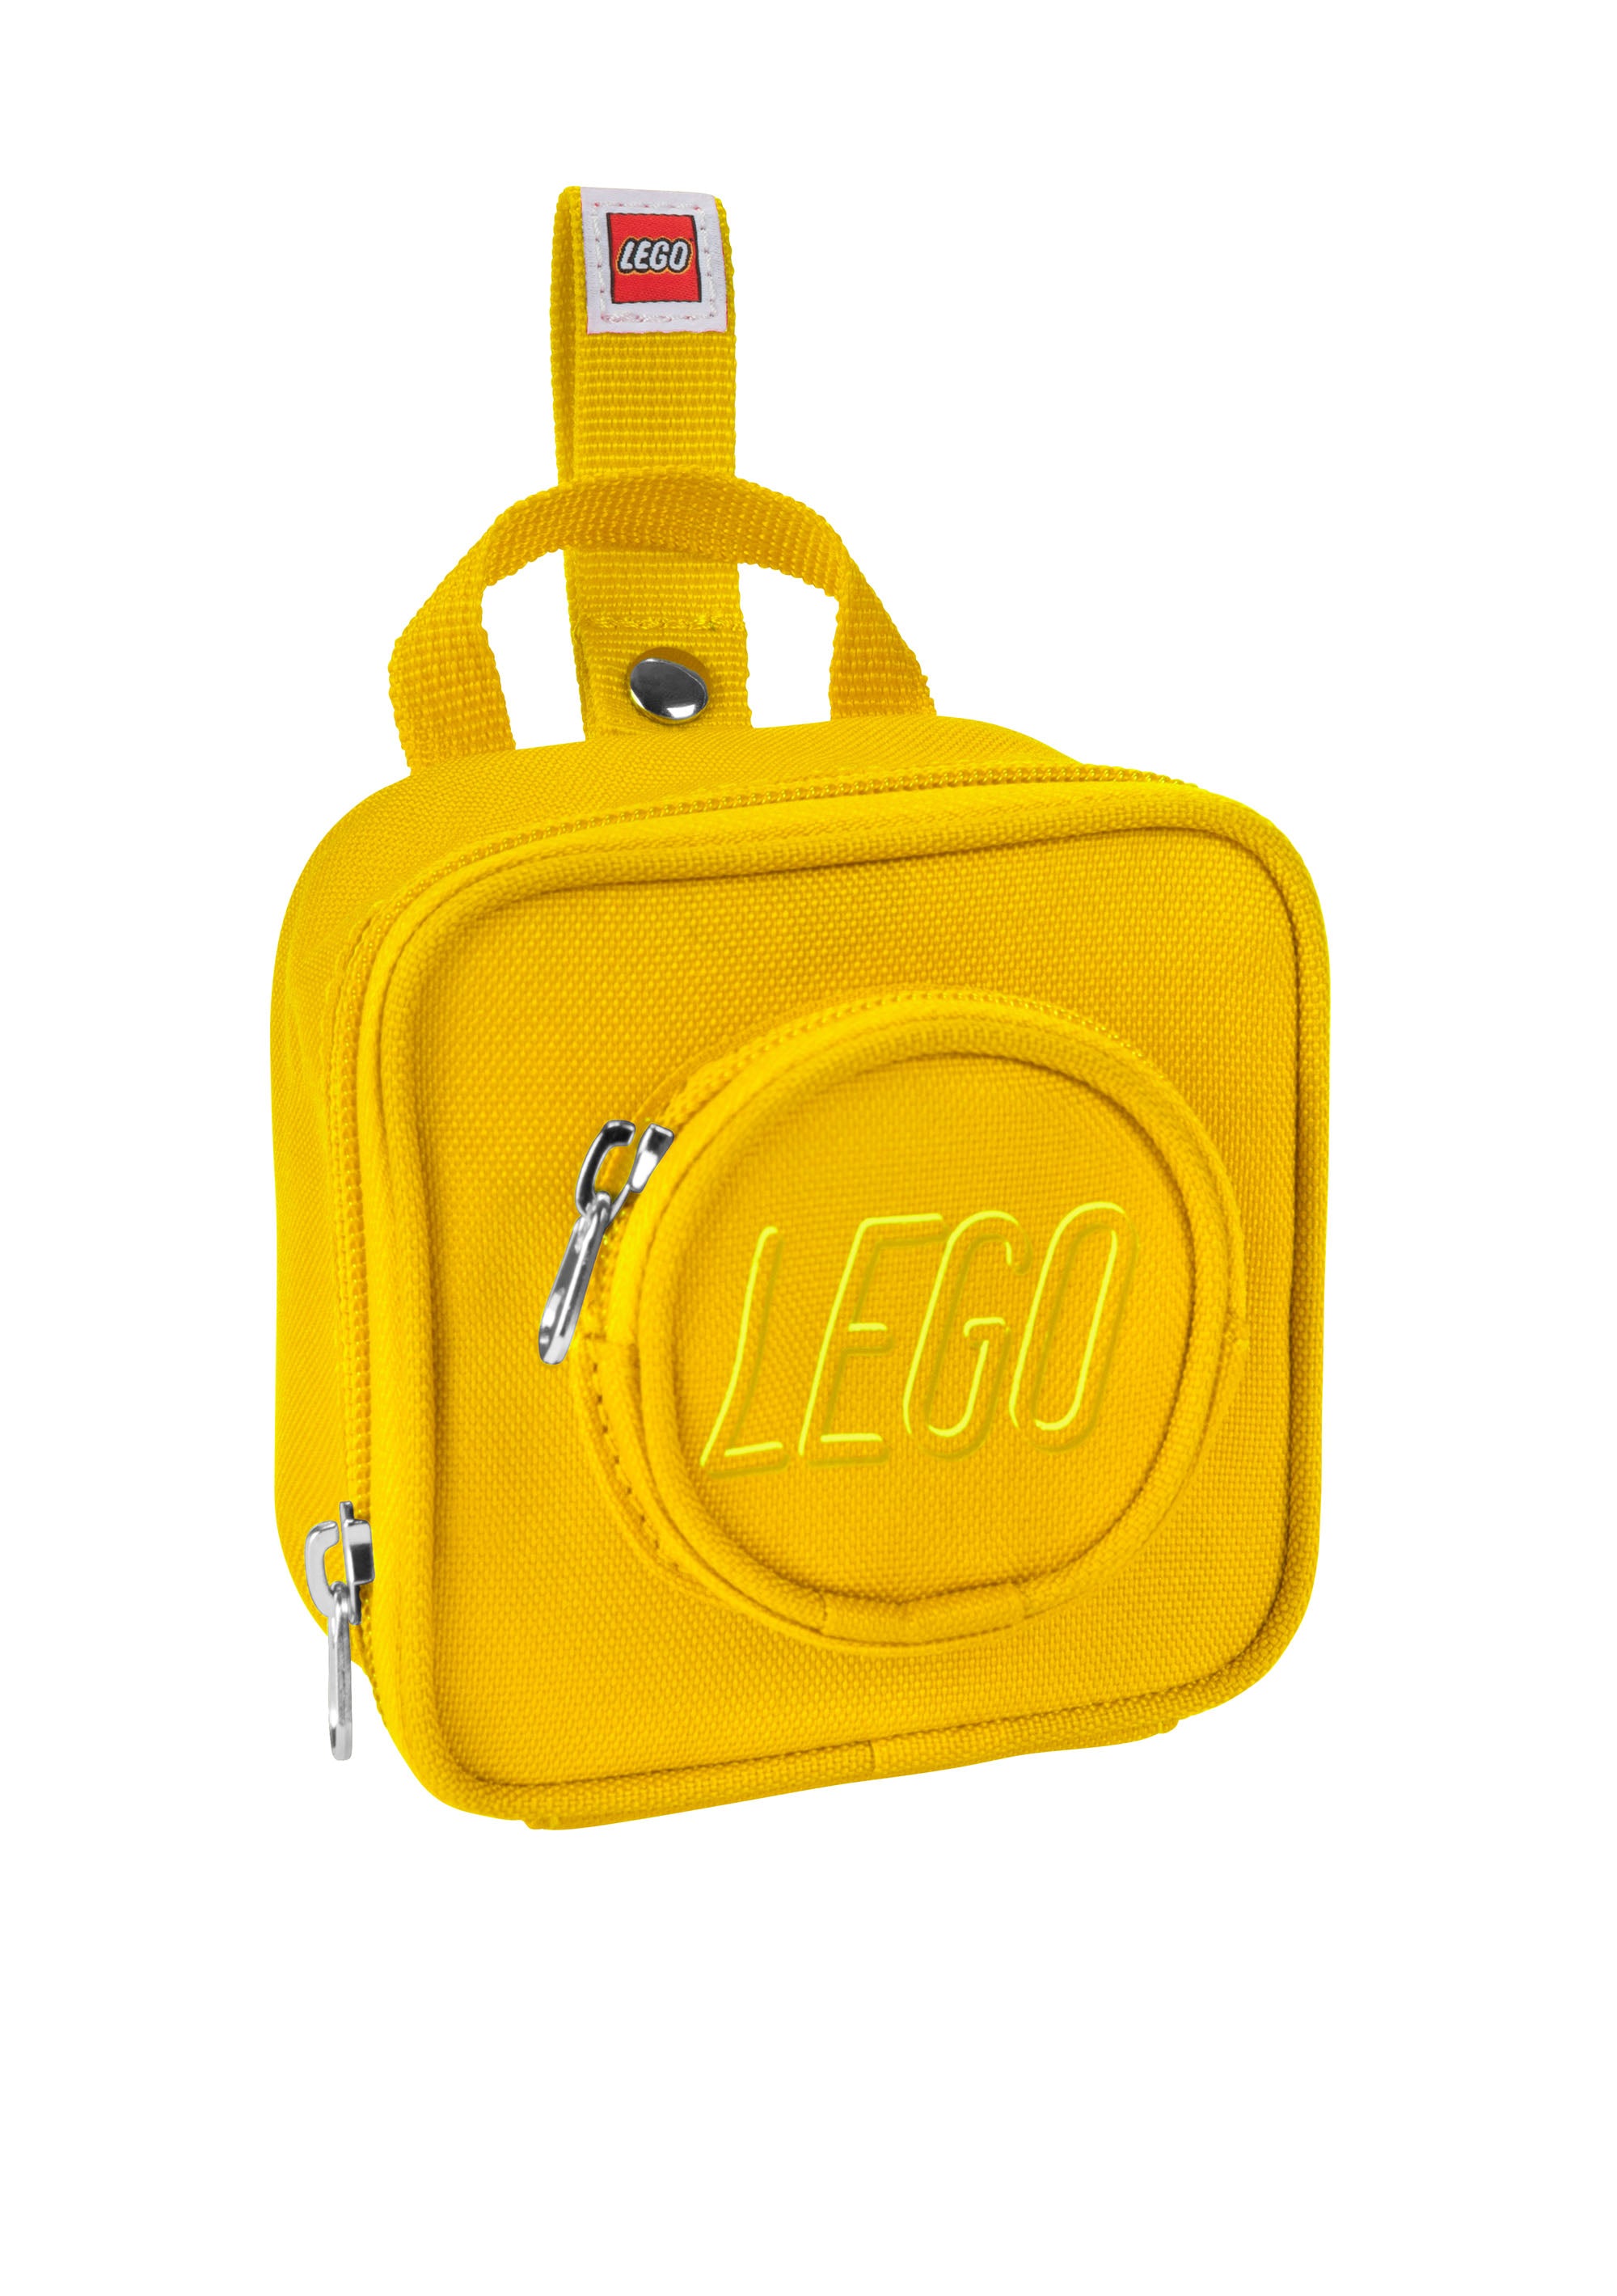 Dark Red Clutch Purse Made With LEGO® Bricks FREE SHIPPING Purse Handbag  Legobag Trending Fashion - Etsy